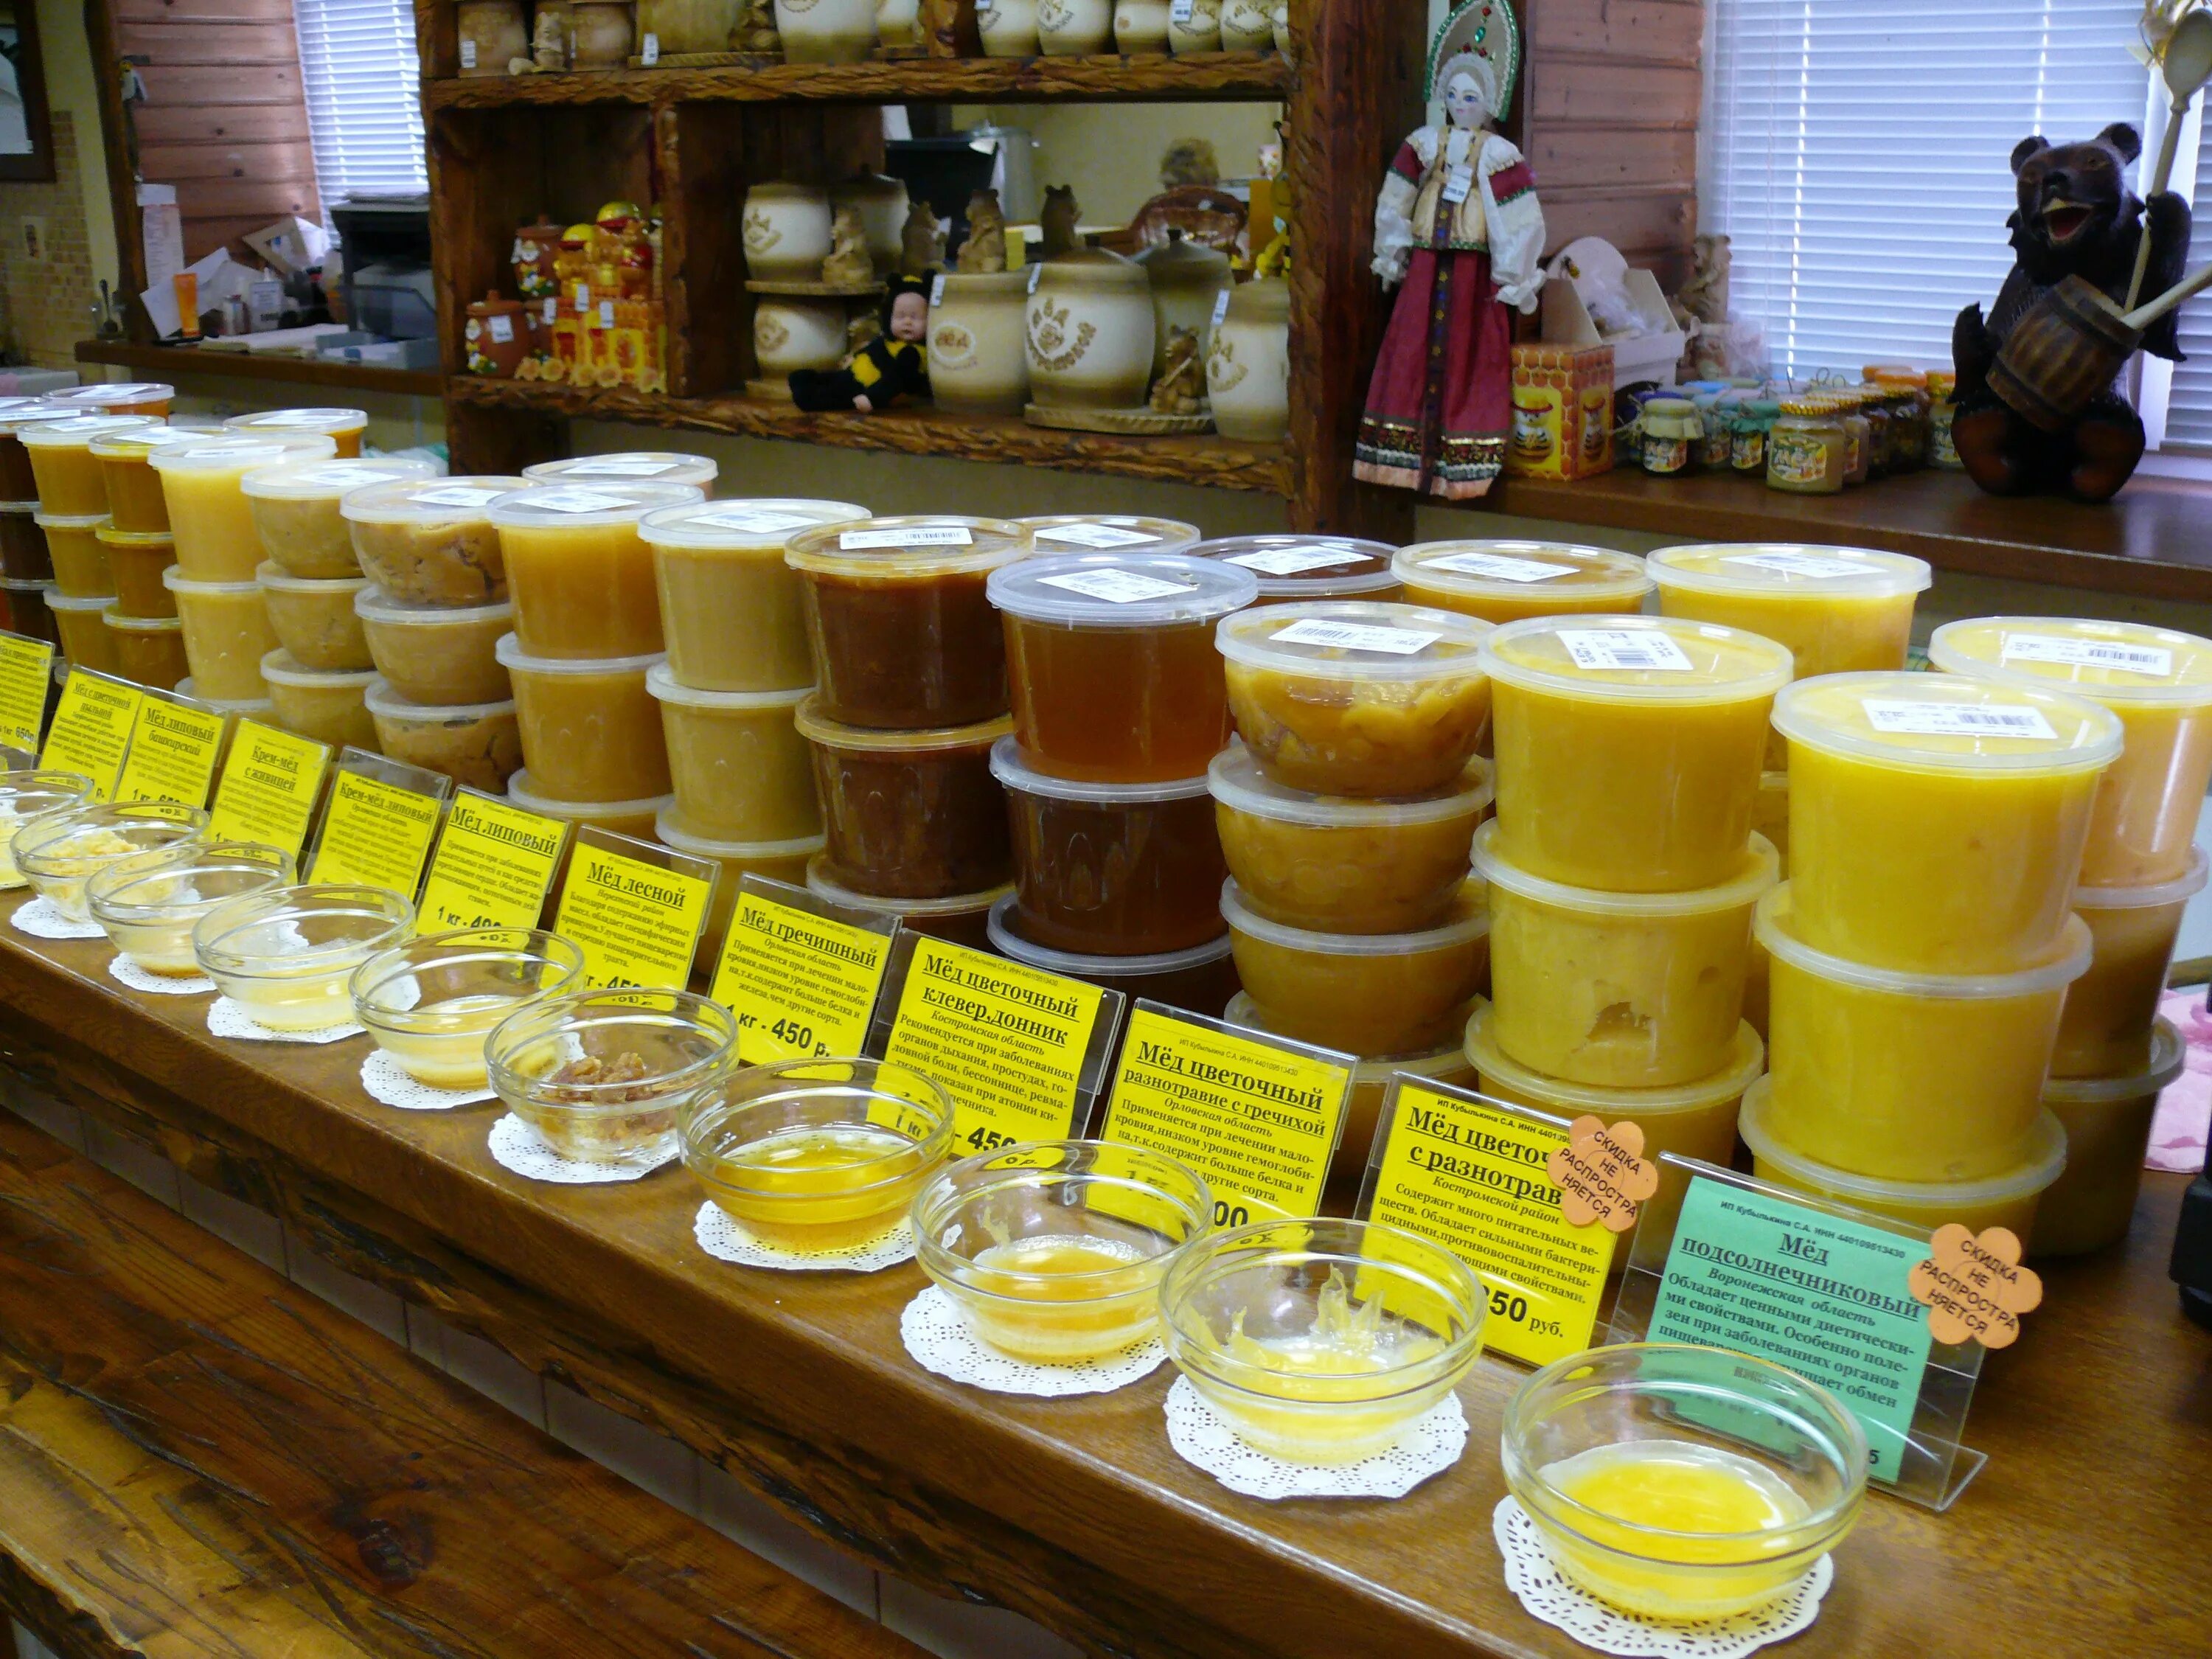 Мед магазинный. Магазин меда. Ярмарка меда. Продукция из меда. Магазин продуктов пчеловодства